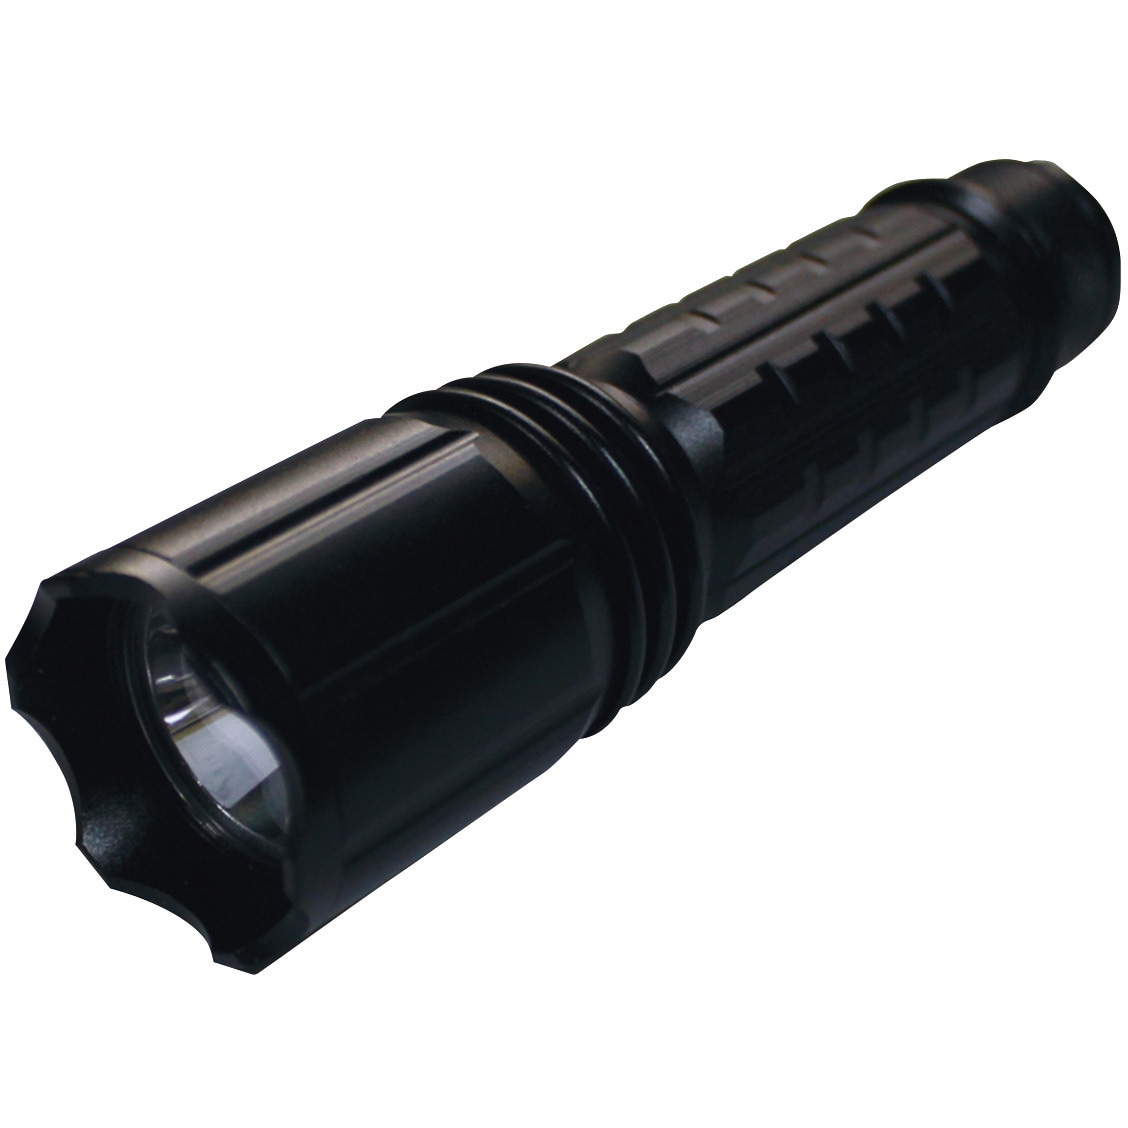 UV-SU395-01 Hydrangea ブラックライト 高出力(ノーマル照射) 乾電池タイプ 1個 Hydrangea  【通販サイトMonotaRO】